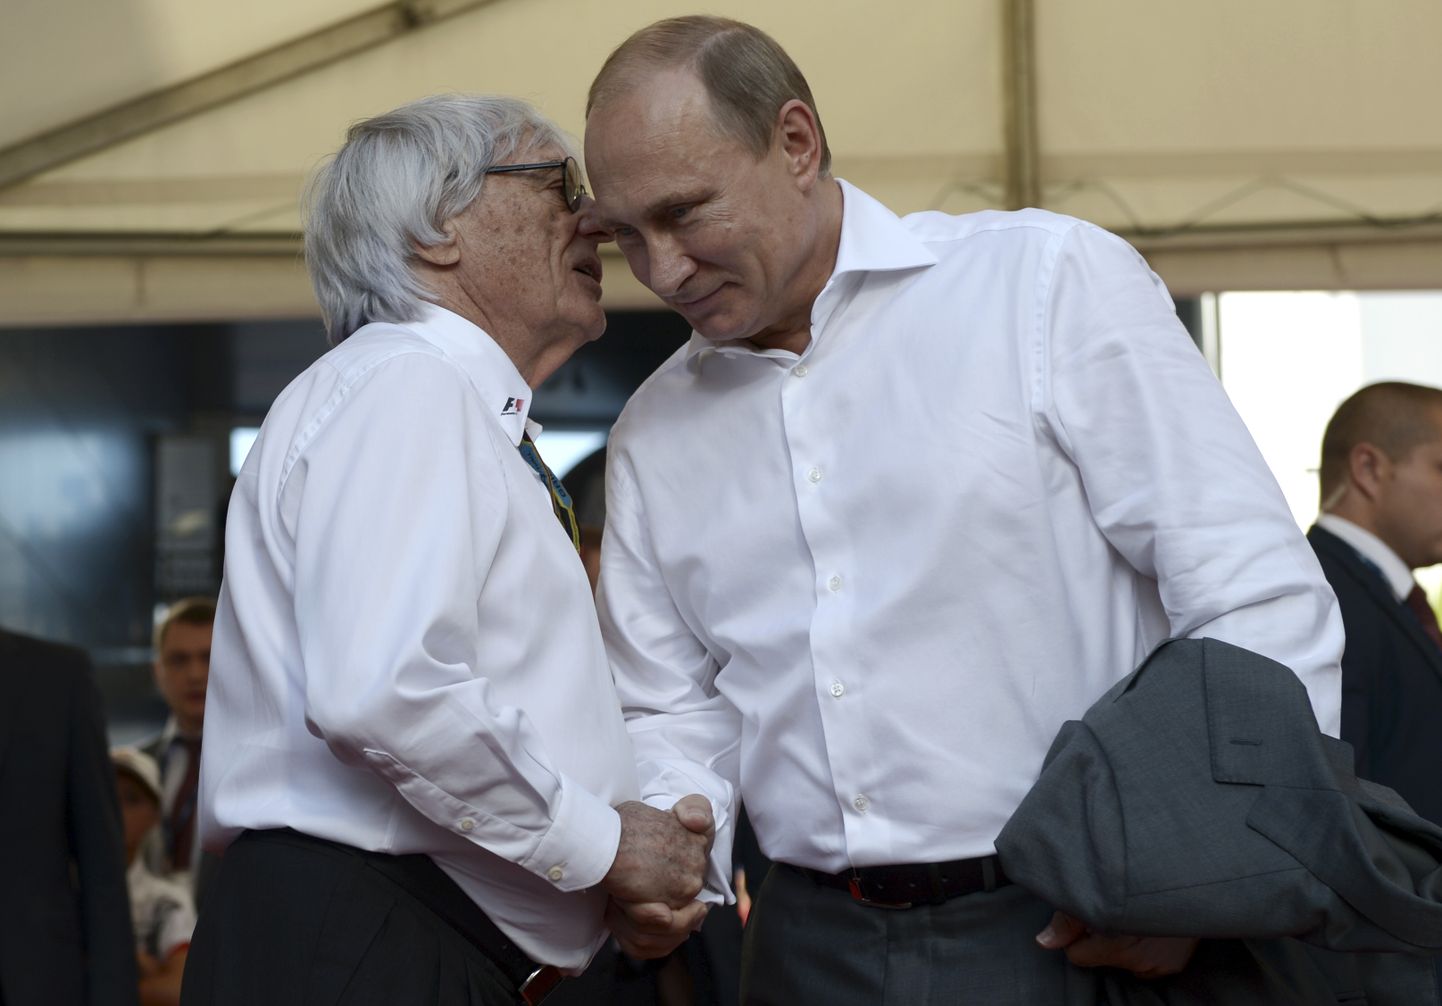 Vormel 1 sarja juht Bernie Ecclestone (vasakul) surumas 12. oktoobril 2014 Venemaal Sotšis vormel 1 osavõistlusel Vene presidendi Vladimir Putini kätt. Ecclestone sõnas nüüd, et Putin on suurepärane inimene, kelle eest ta on valmis kuuli saama